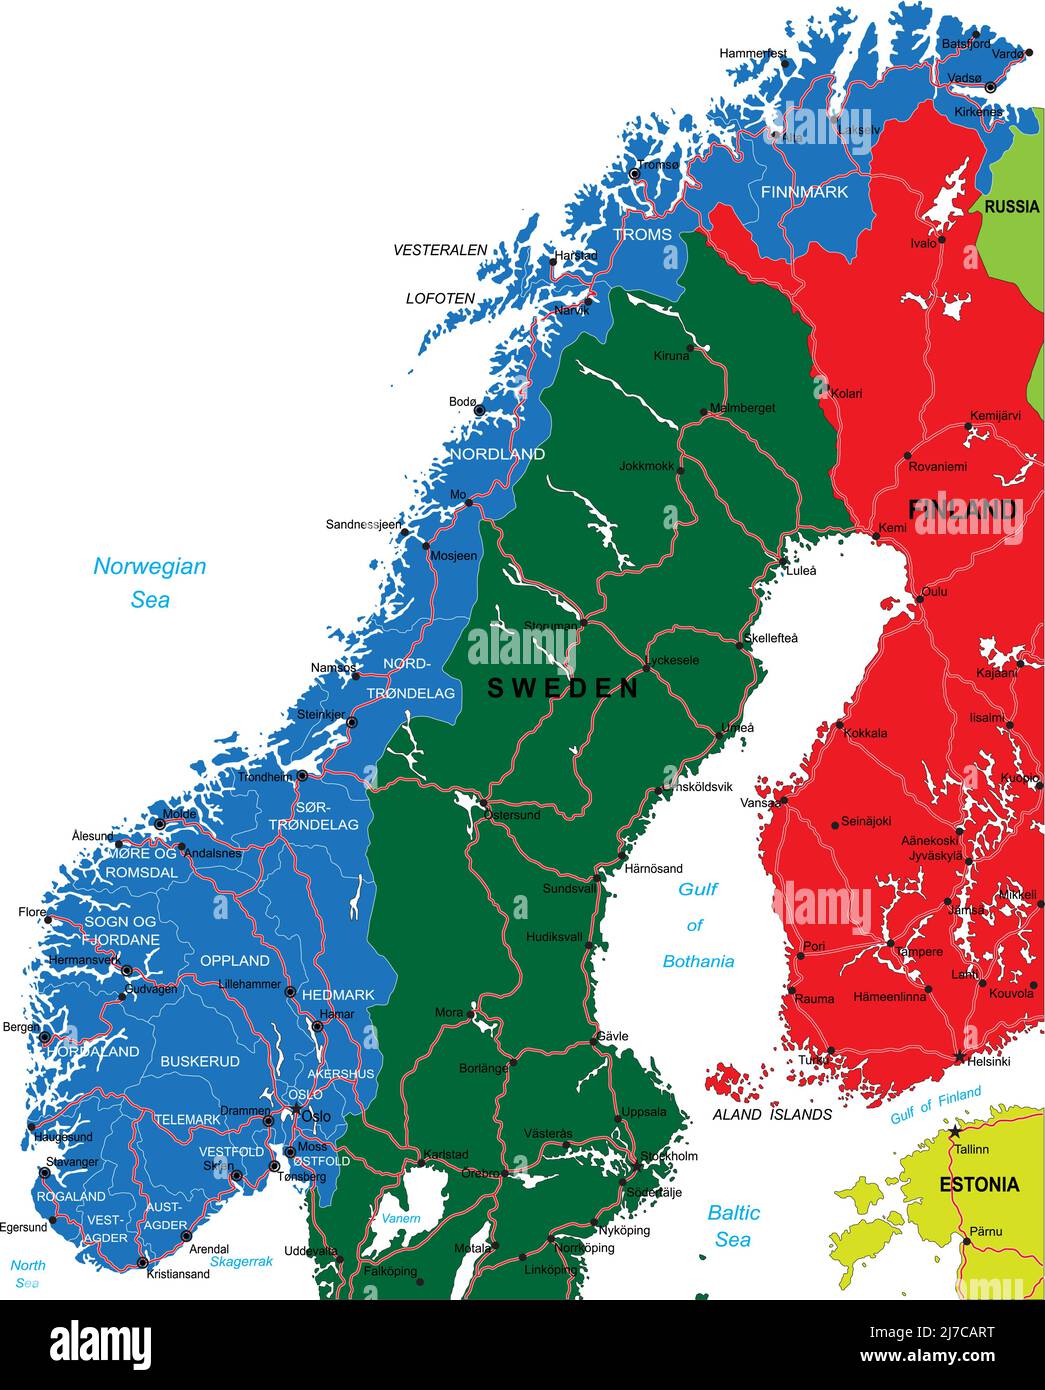 Mappa vettoriale altamente dettagliata della Norvegia con regioni amministrative, città principali e strade. Illustrazione Vettoriale